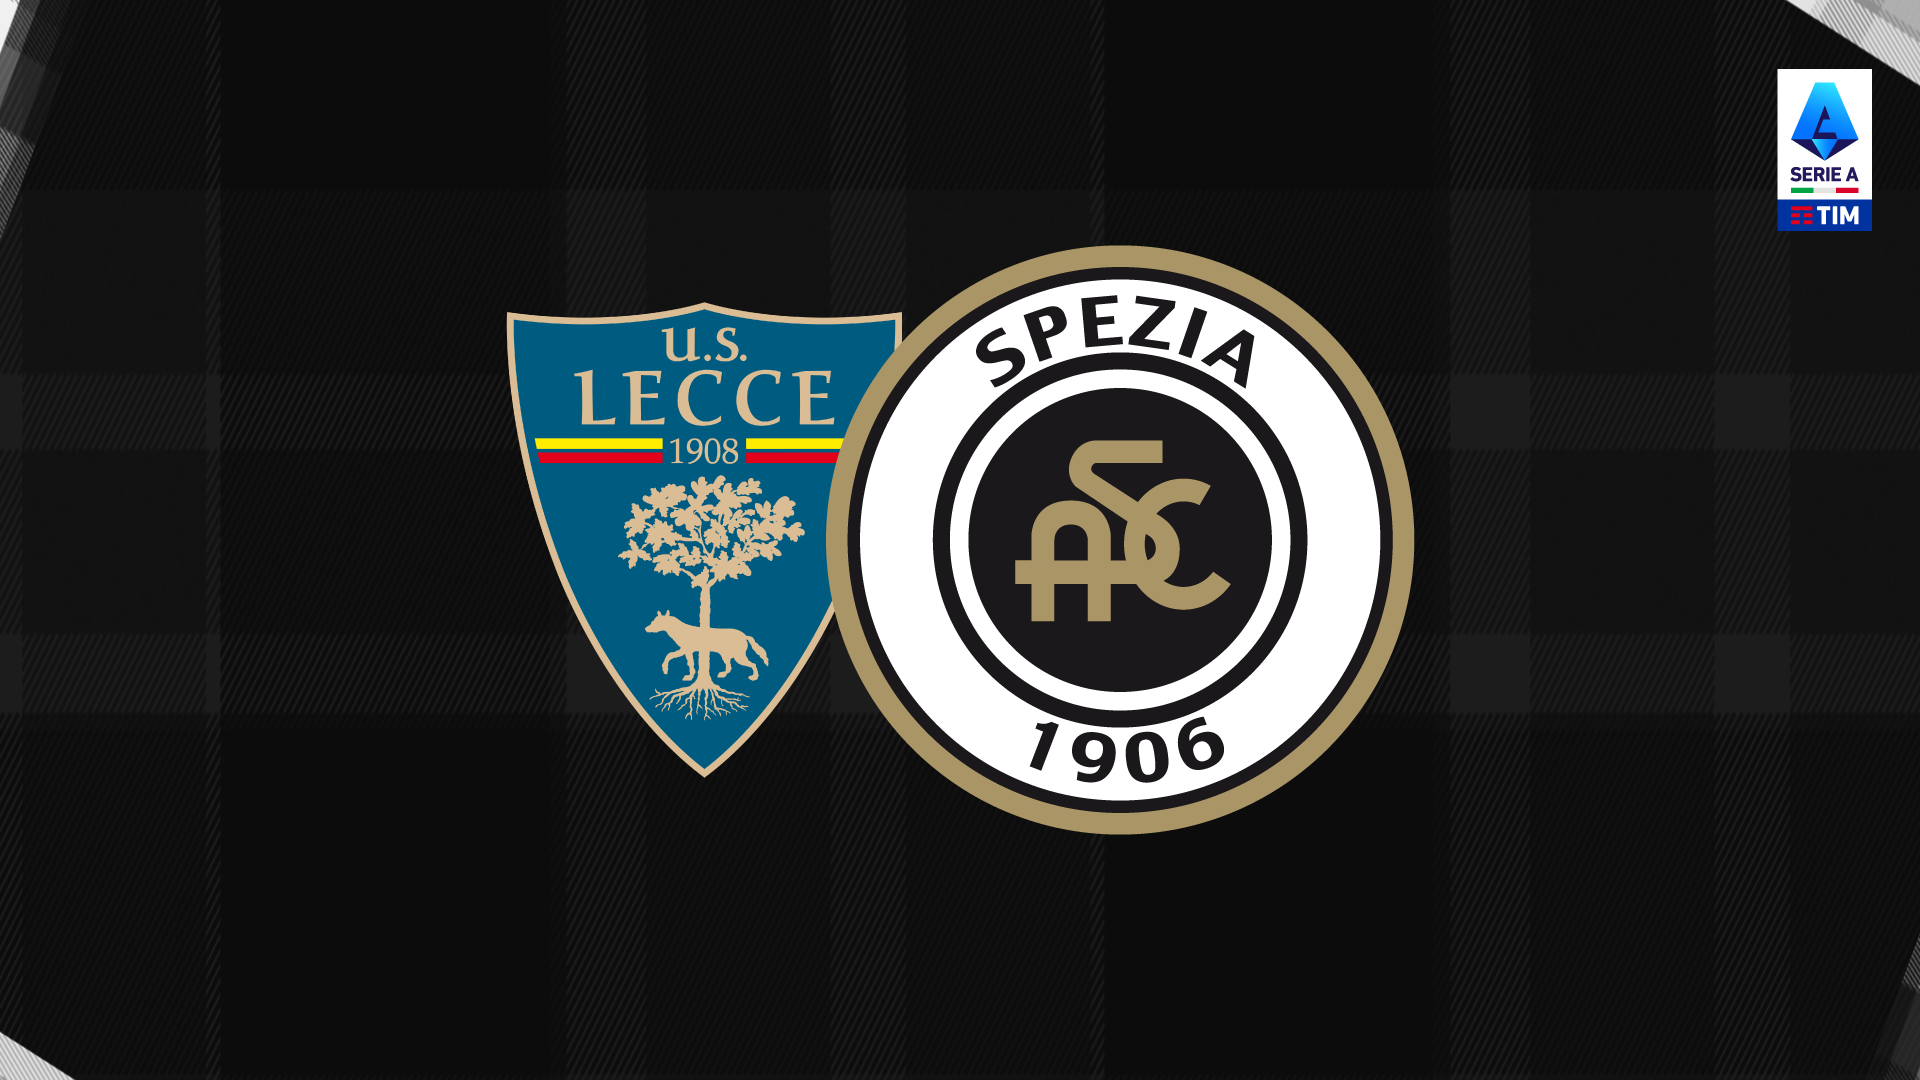 Serie A TIM: Lecce-Spezia 0-0